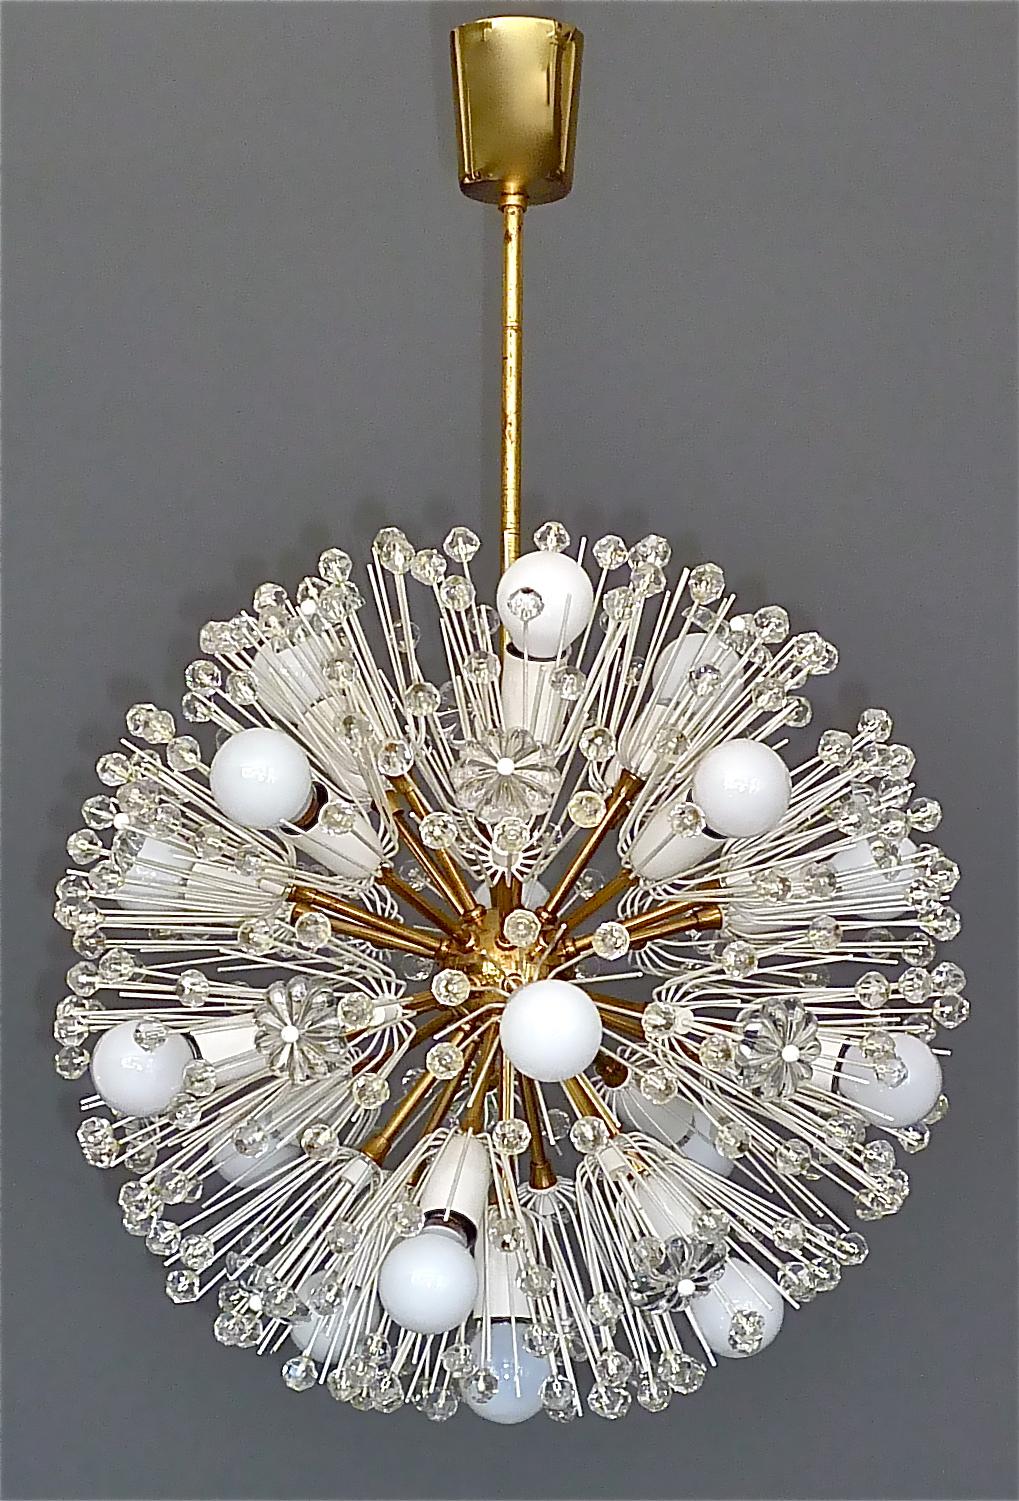 Fantastique grand lustre sputnik à pissenlit du milieu du siècle dernier, de la série Pyra, conçu par Emil Stejnar et exécuté par Rupert Nikoll, Vienne, Autriche, vers 1955. Cette magnifique lampe à suspension est composée de laiton patiné, de métal